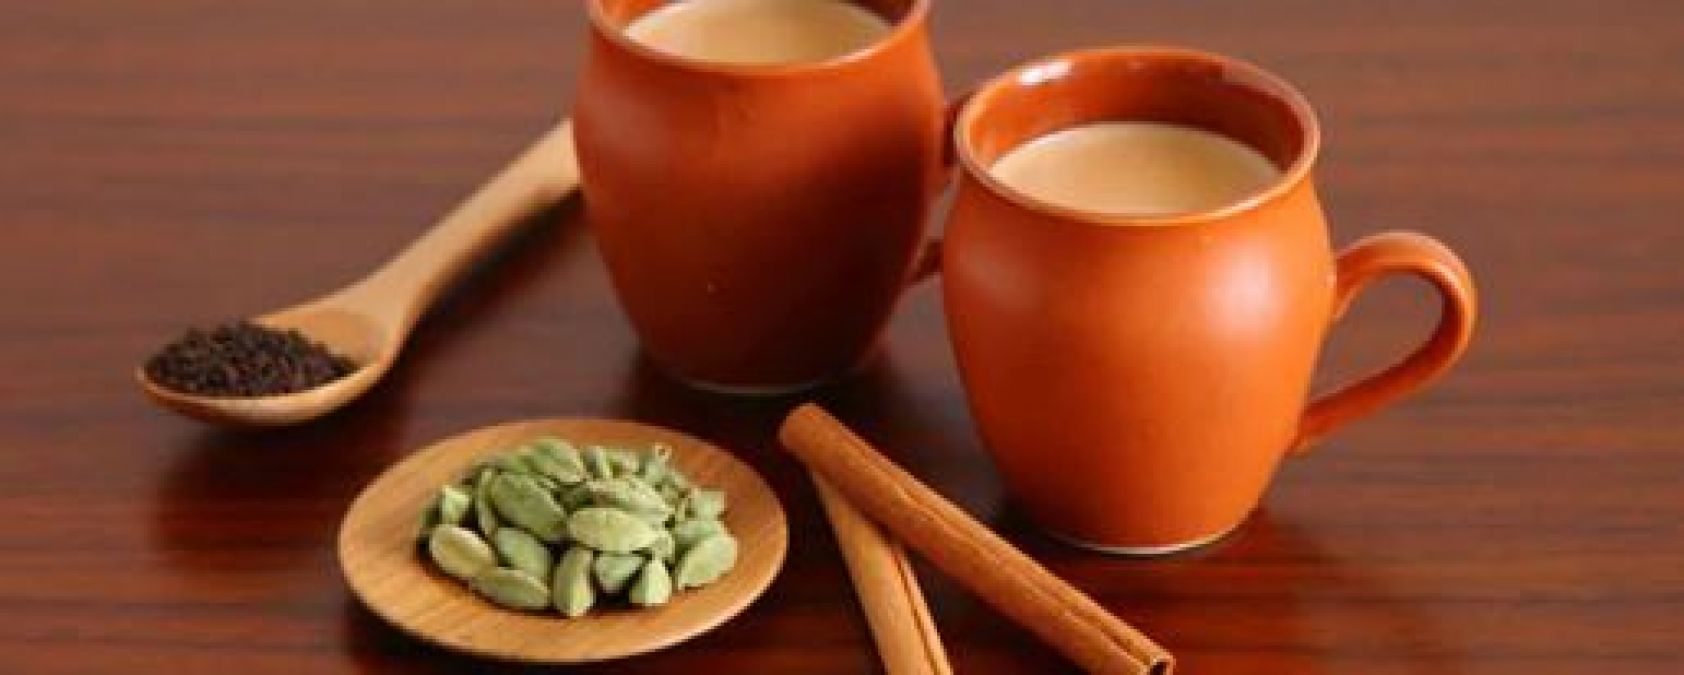 दिल की बीमरियों से बचाती है इलायची की चाय, जानिए इसके चौकाने वाले फायदे